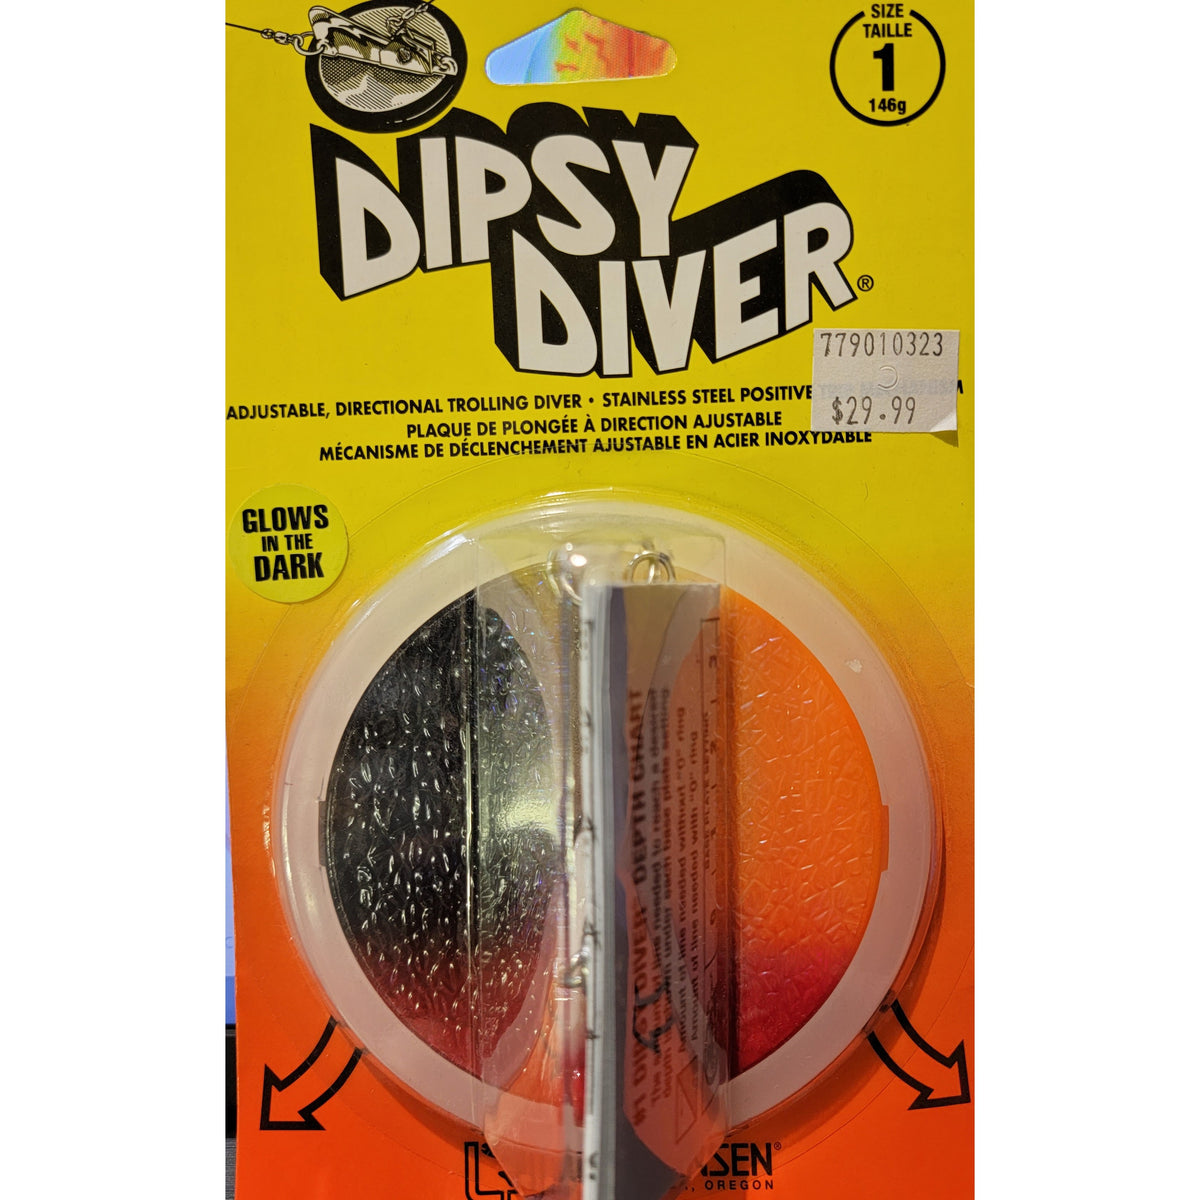 Dipsy Diver – Hunted Treasures